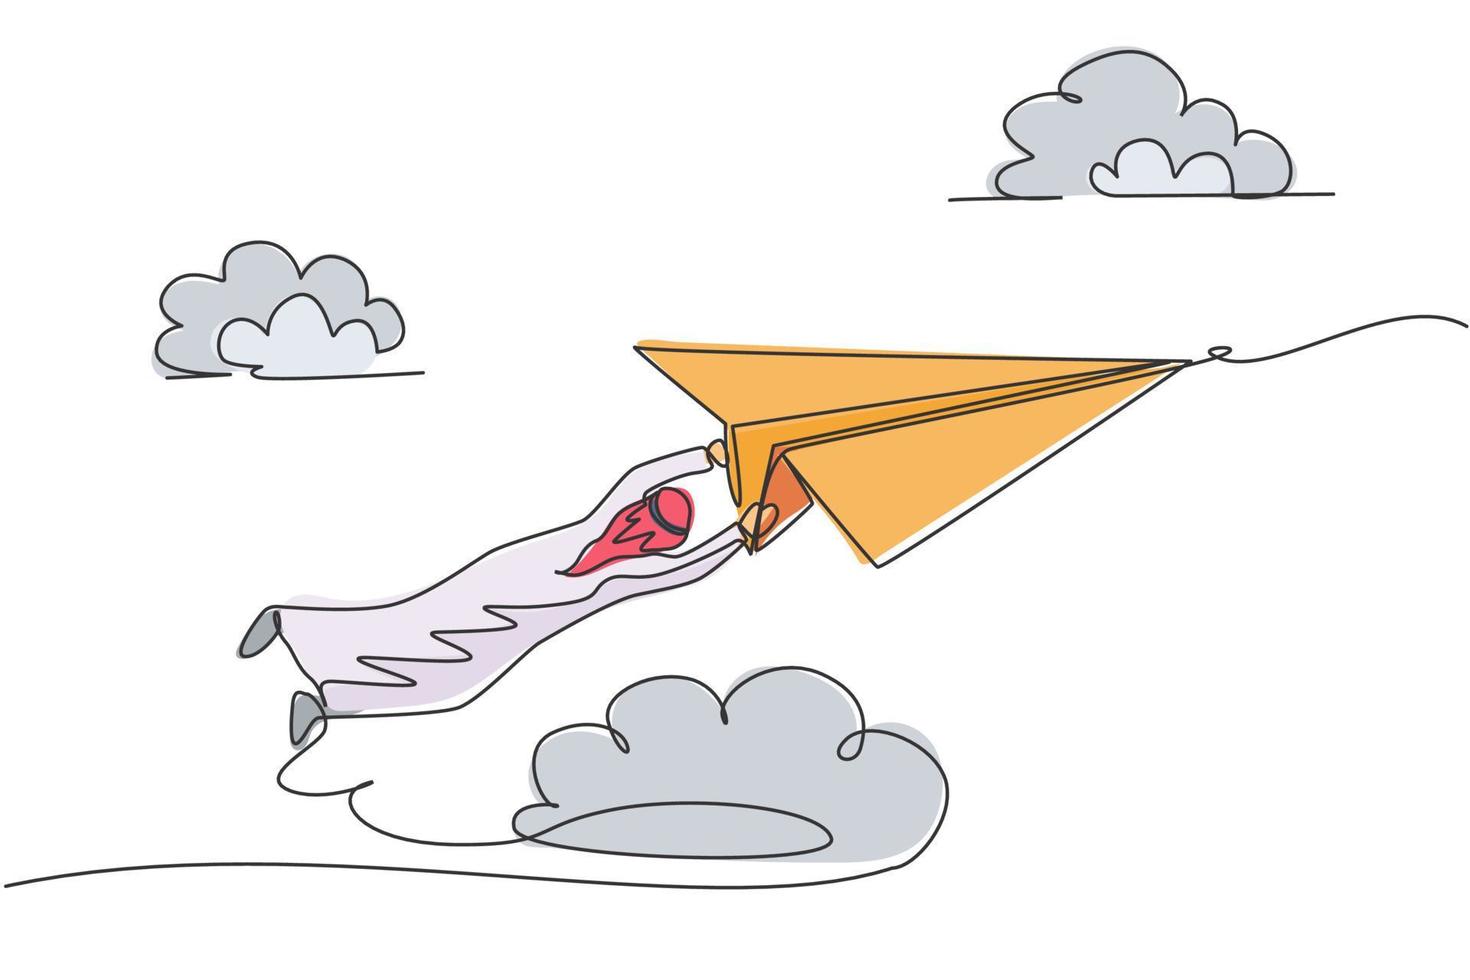 Single One-Line-Zeichnung des jungen arabischen Geschäftsmannes, der fest am Papierflugzeug hängt. Geschäftliche Herausforderung minimales Metapher-Konzept. moderne durchgehende Linie zeichnen Design-Grafik-Vektor-Illustration vektor